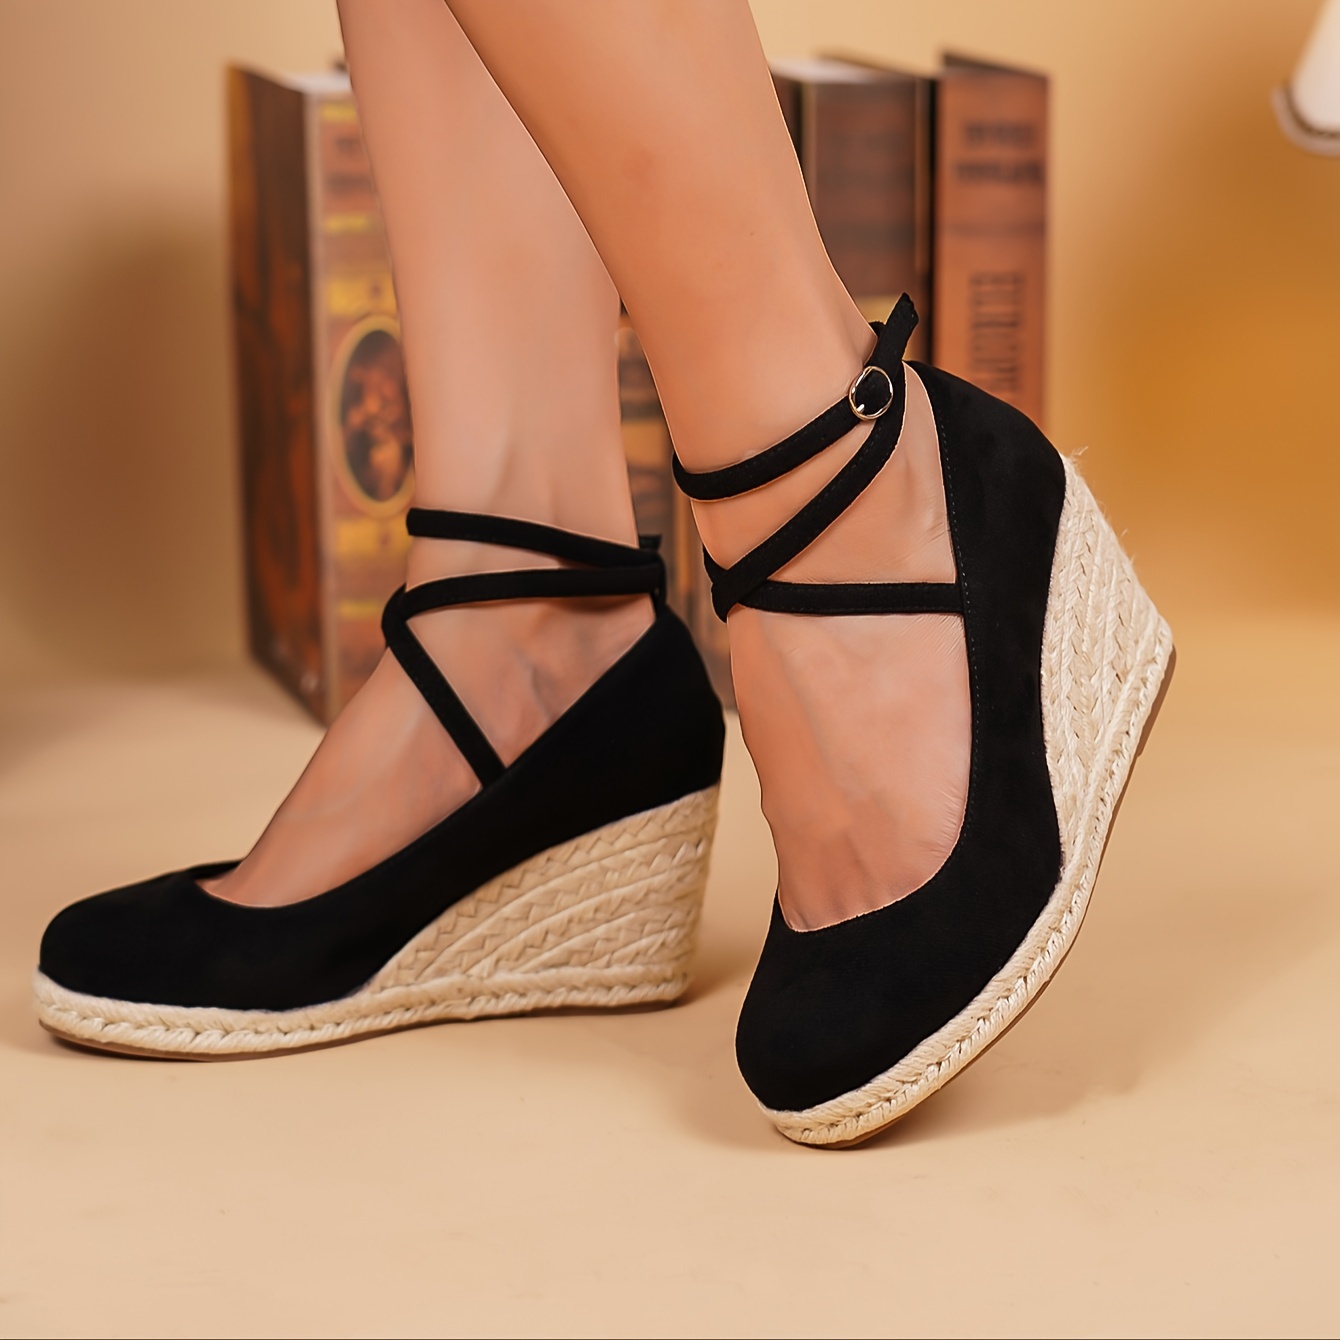 

Women's Solid Color Platform Sandals, Cross Straps Ankle Buckle Summer Beach Shoes, Espadrilles Wedge Non-slip Shoes